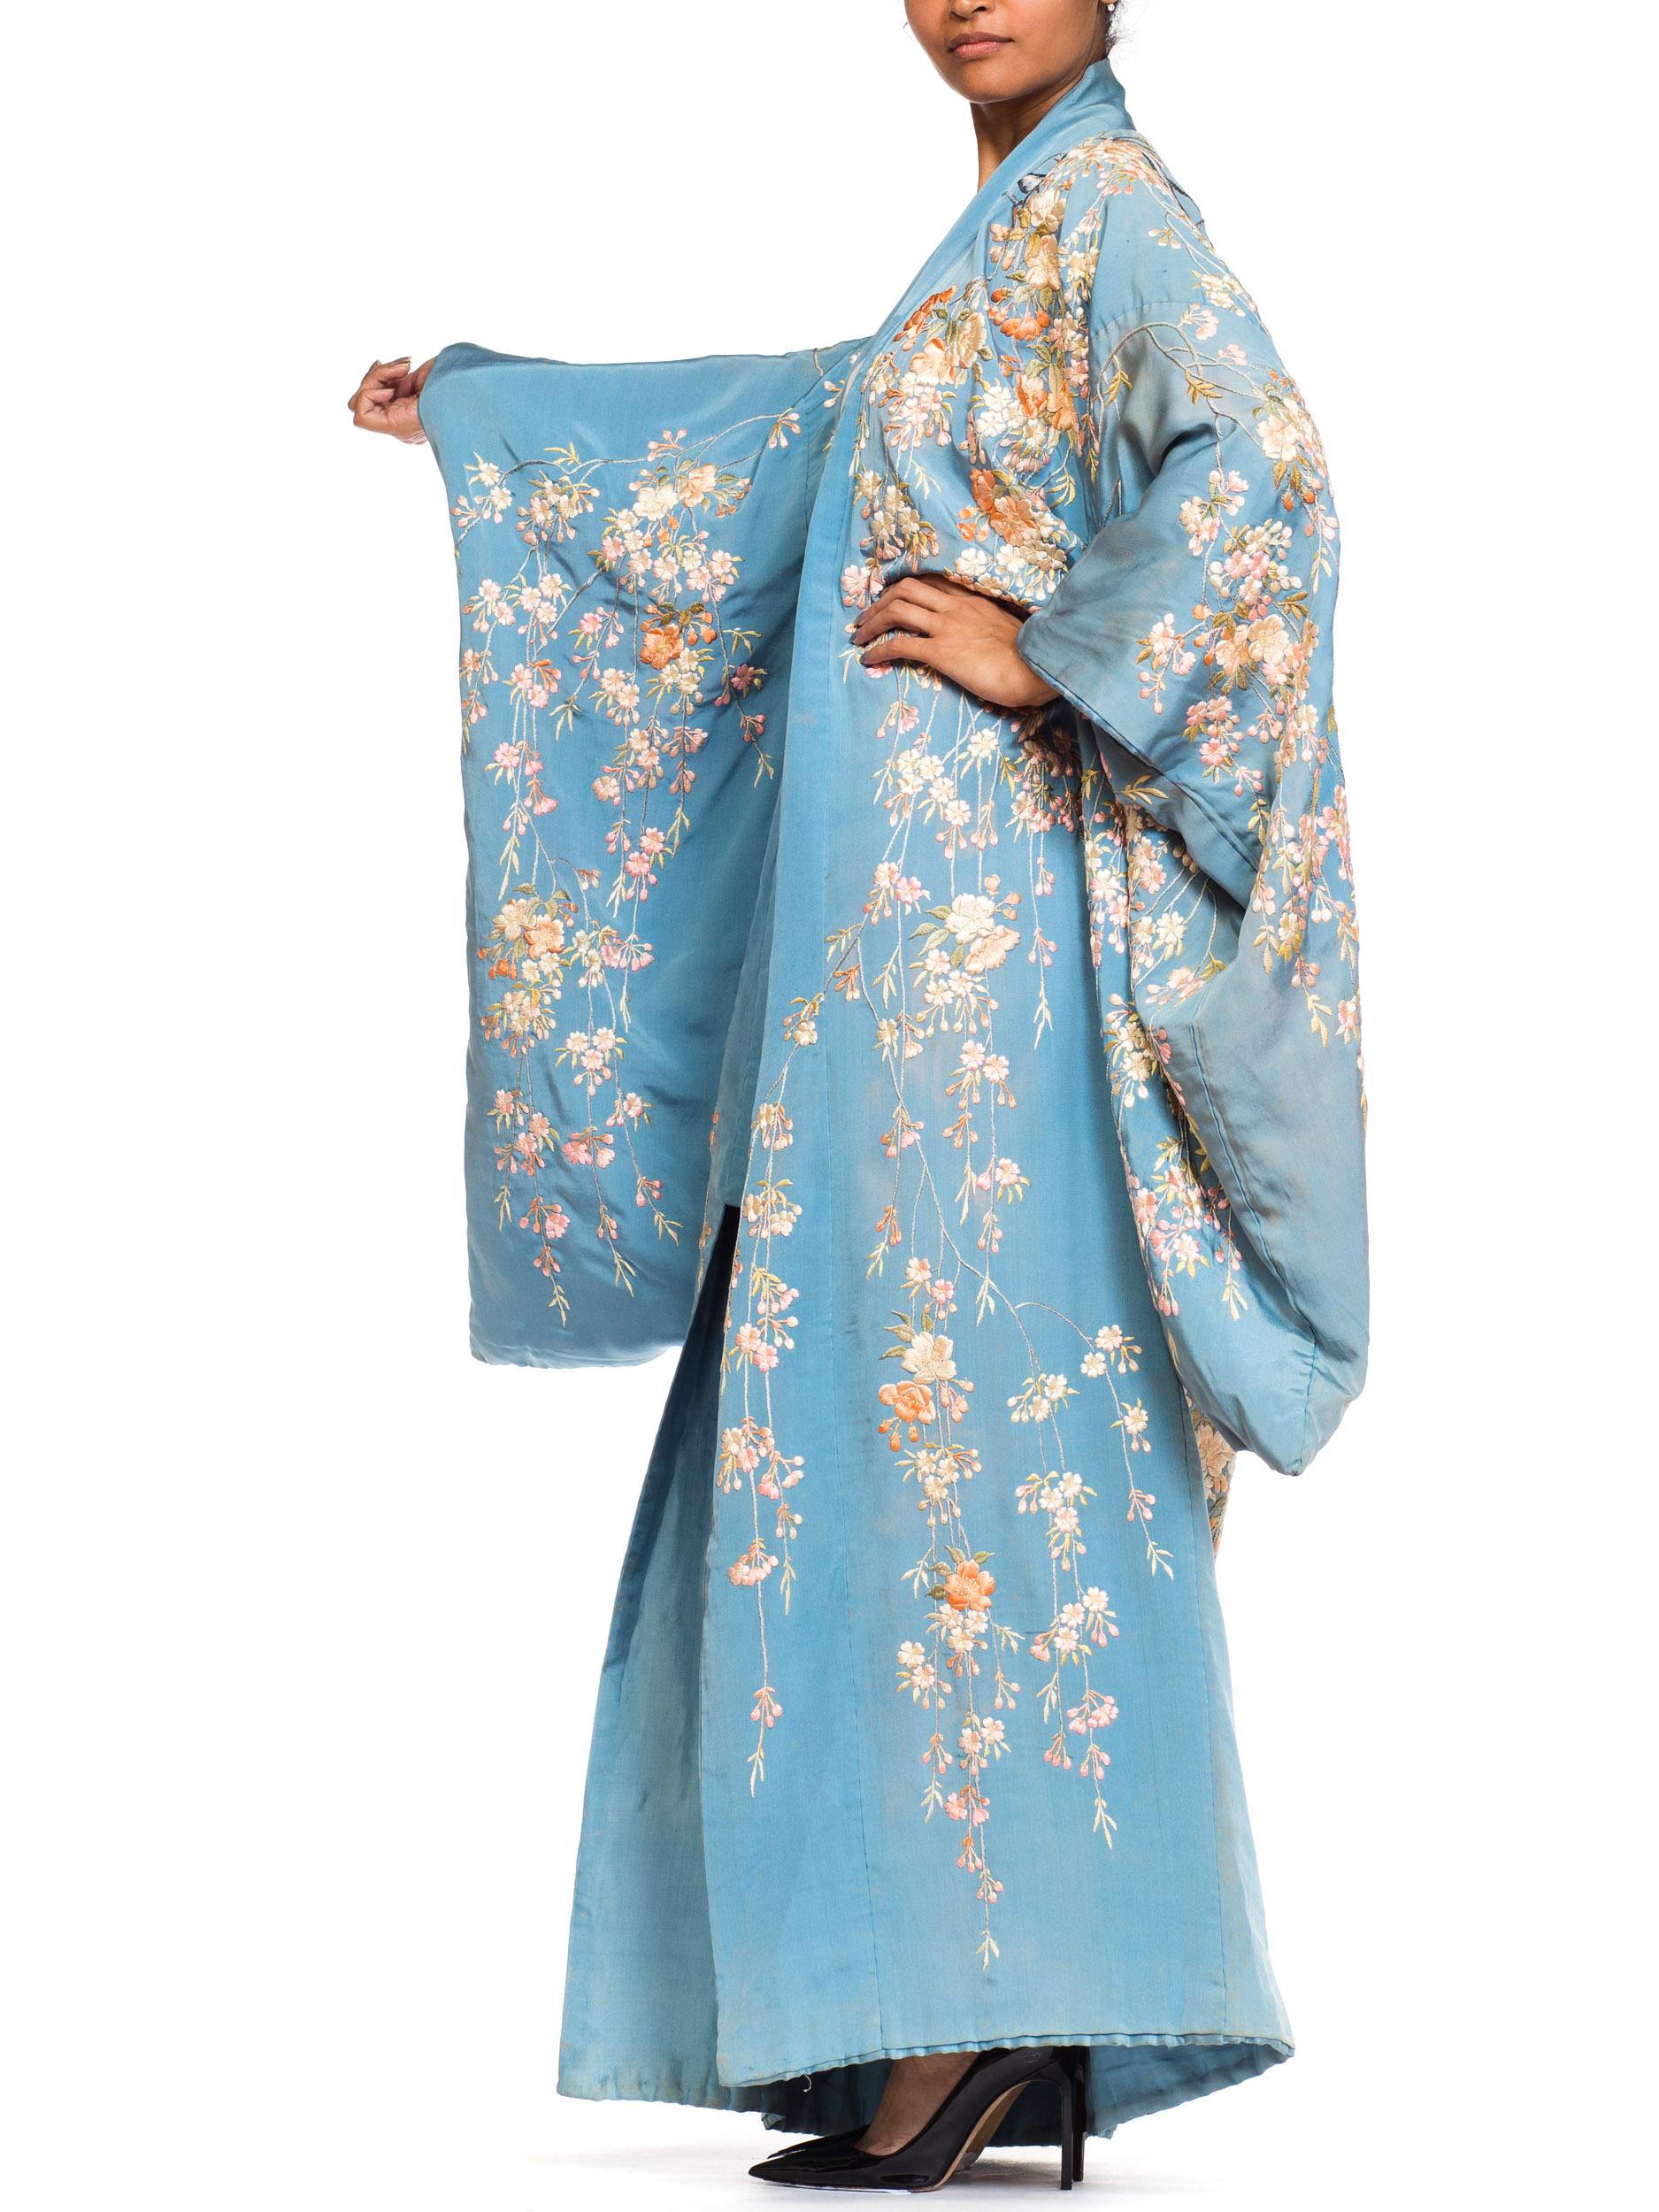 edwardian kimono